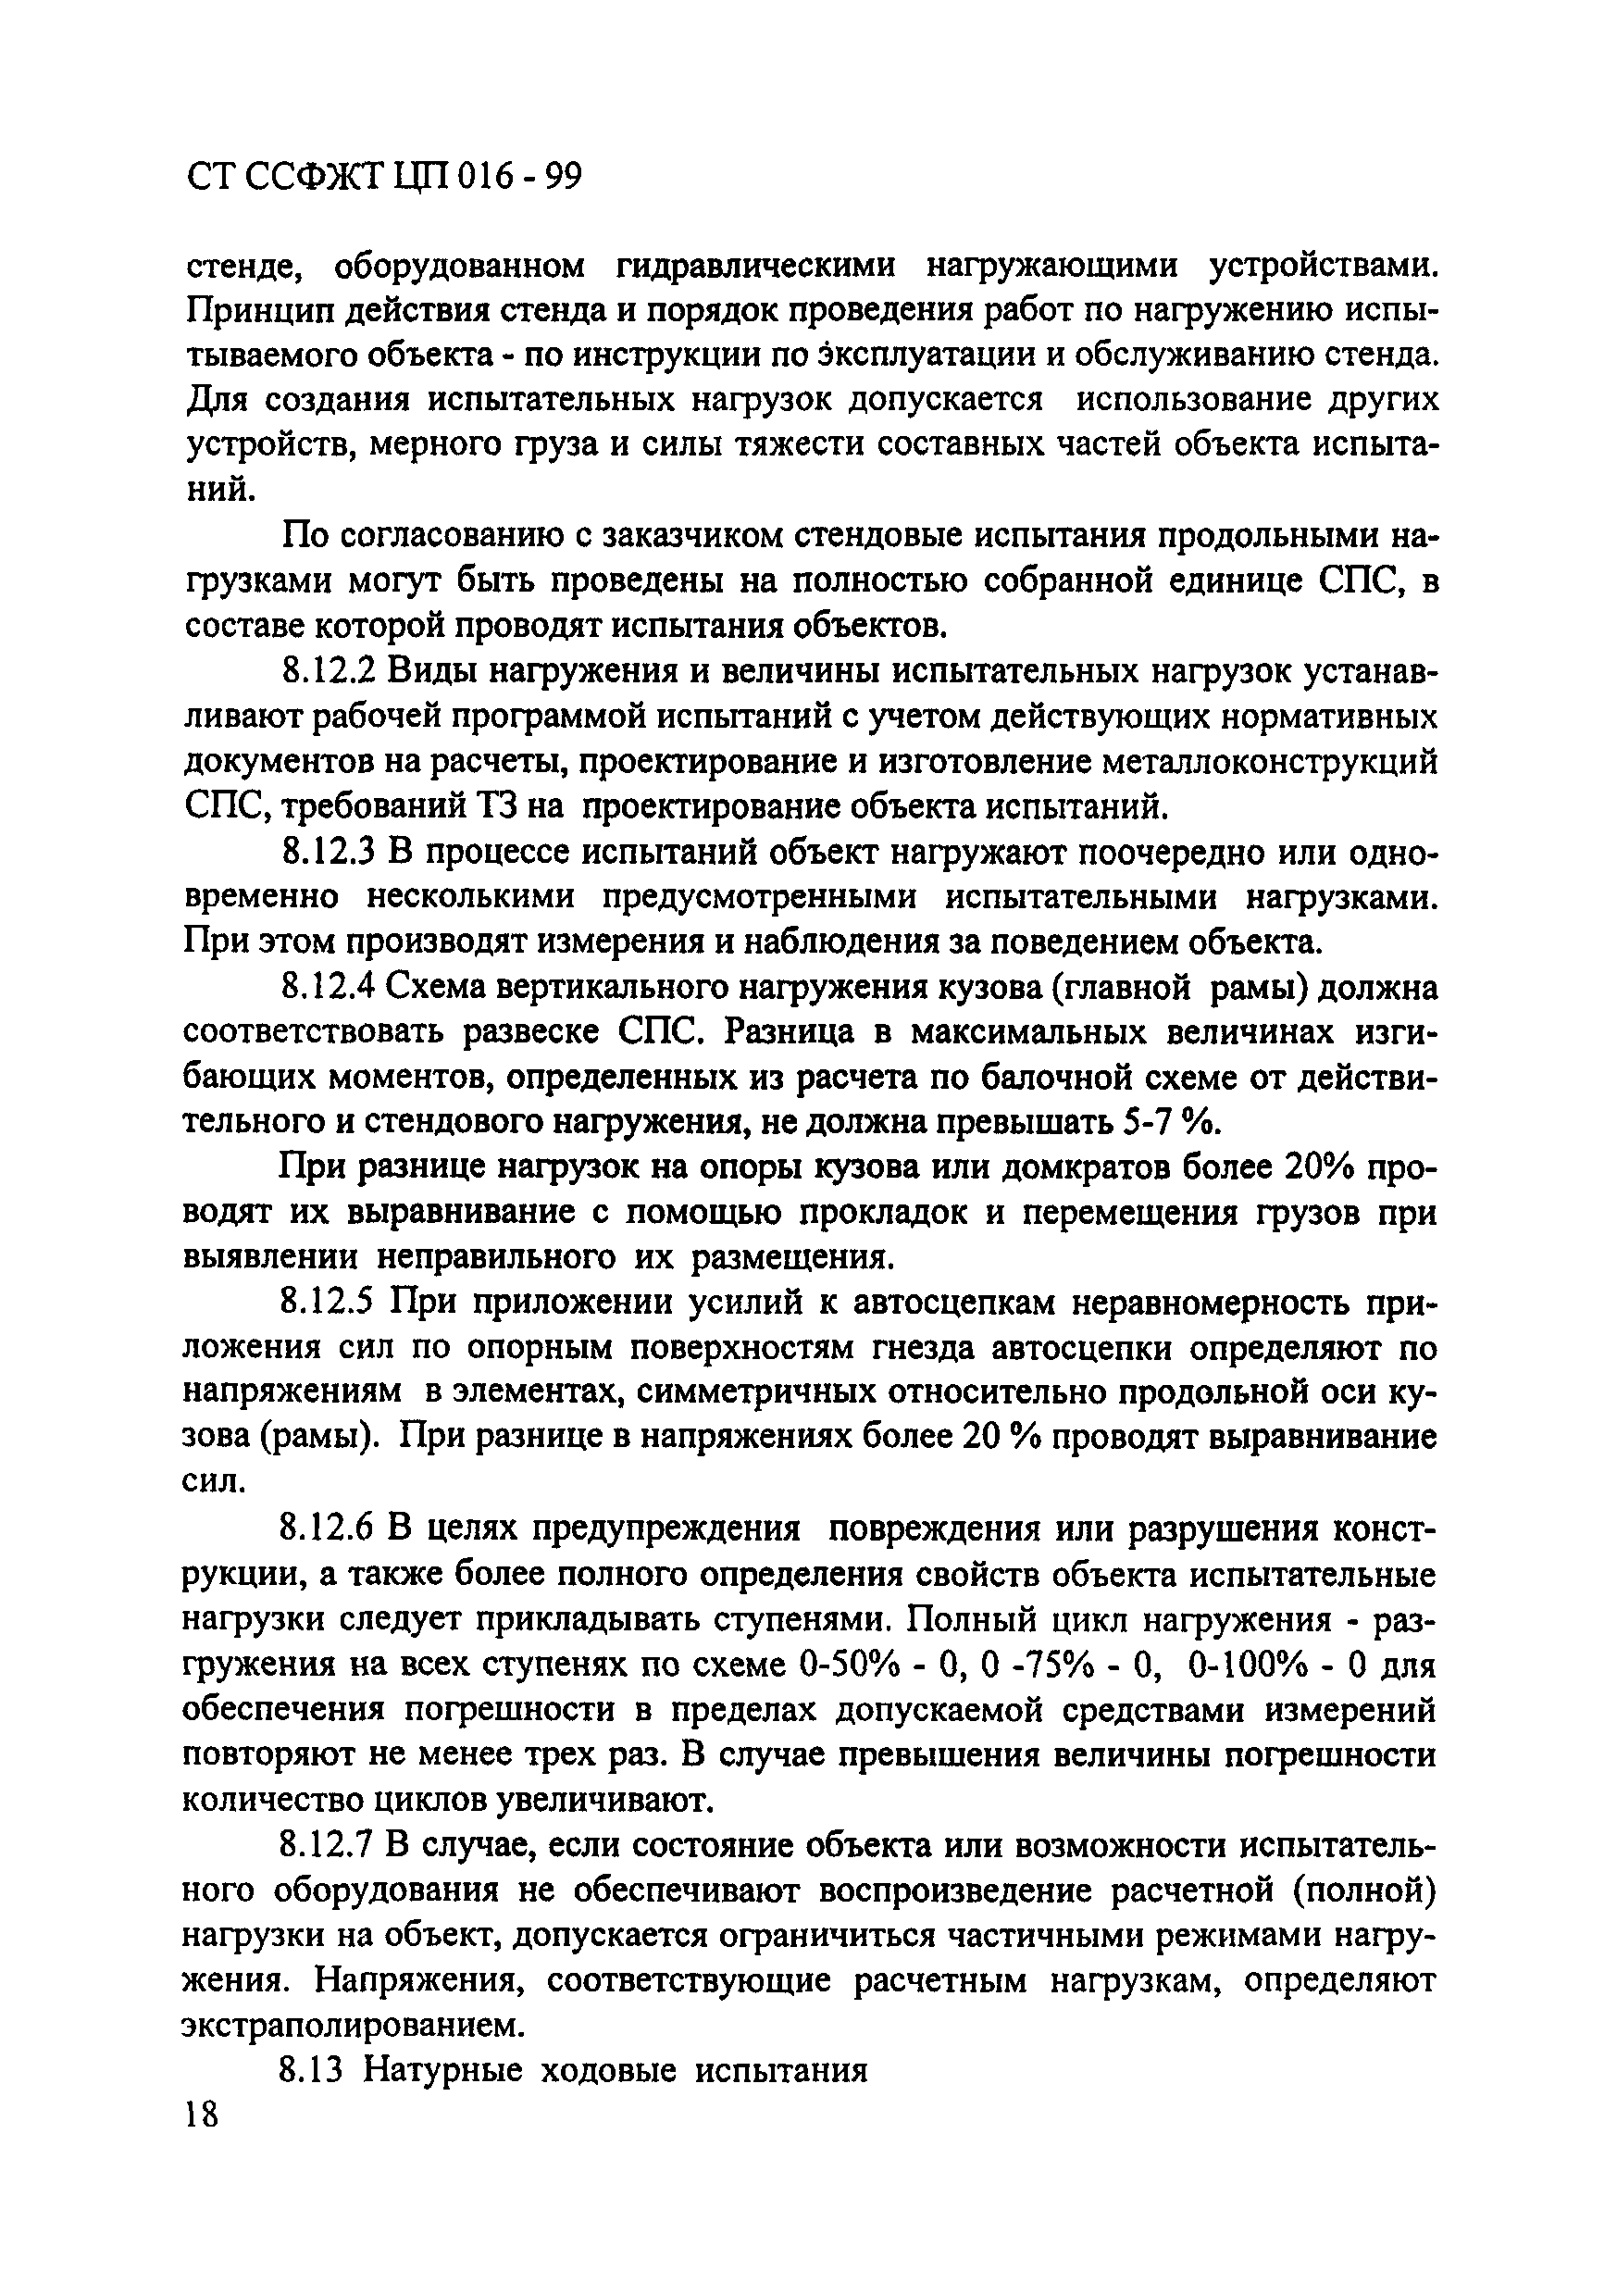 СТ ССФЖТ ЦП 016-99